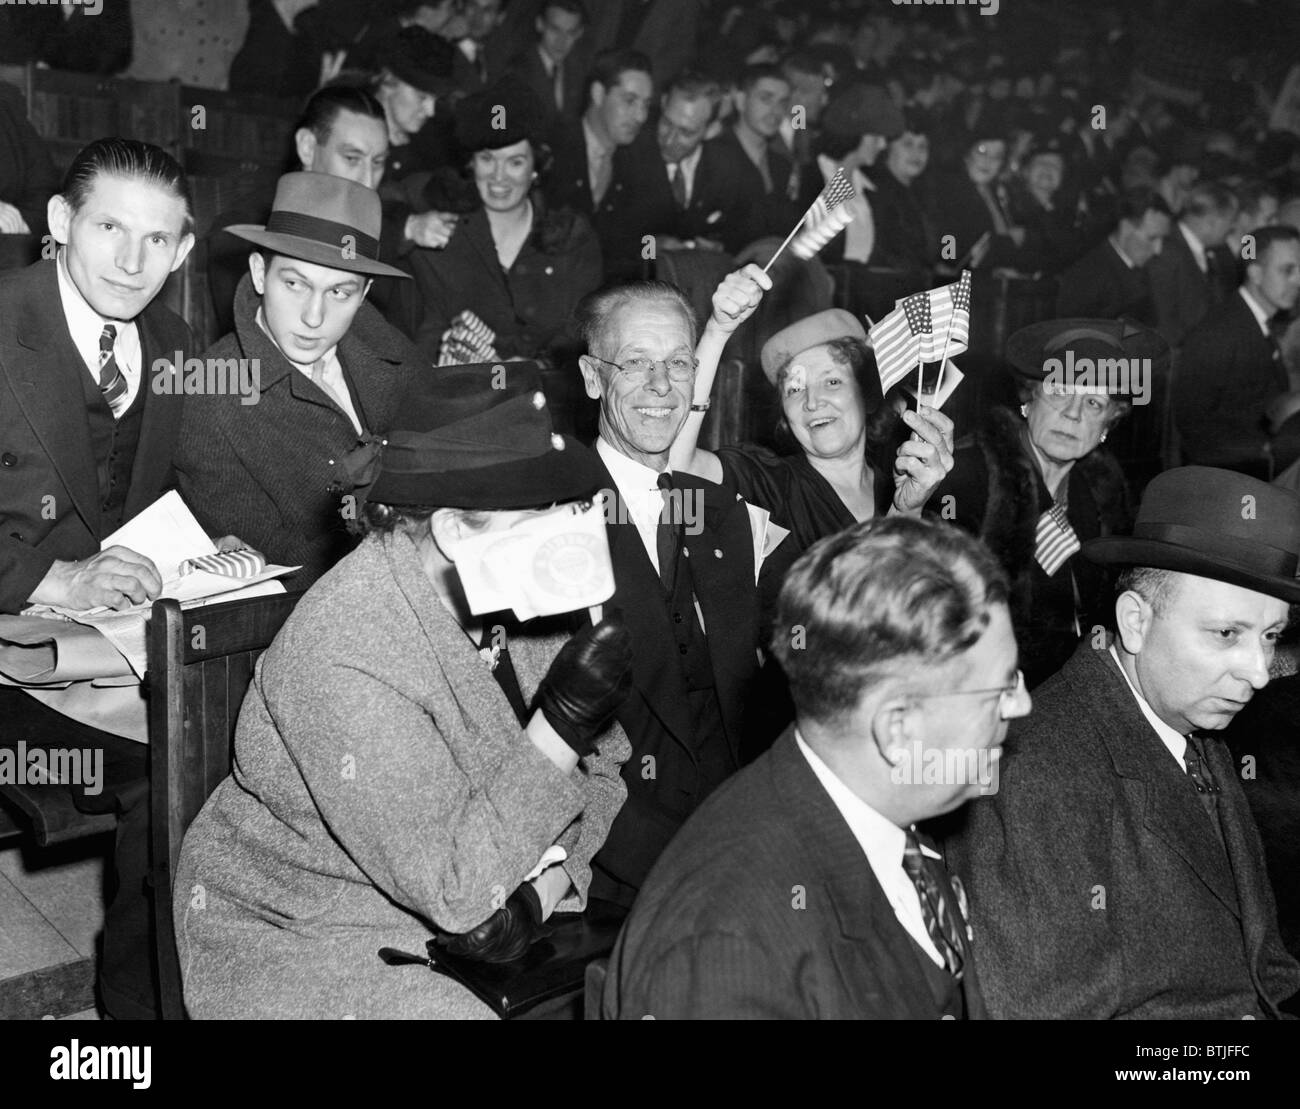 Das America First Committee, Protest gegen die Vereinigten Staaten Eintragung in zweiter Weltkrieg, New York, 4. November 1941. CSU-Archiv/Cou Stockfoto